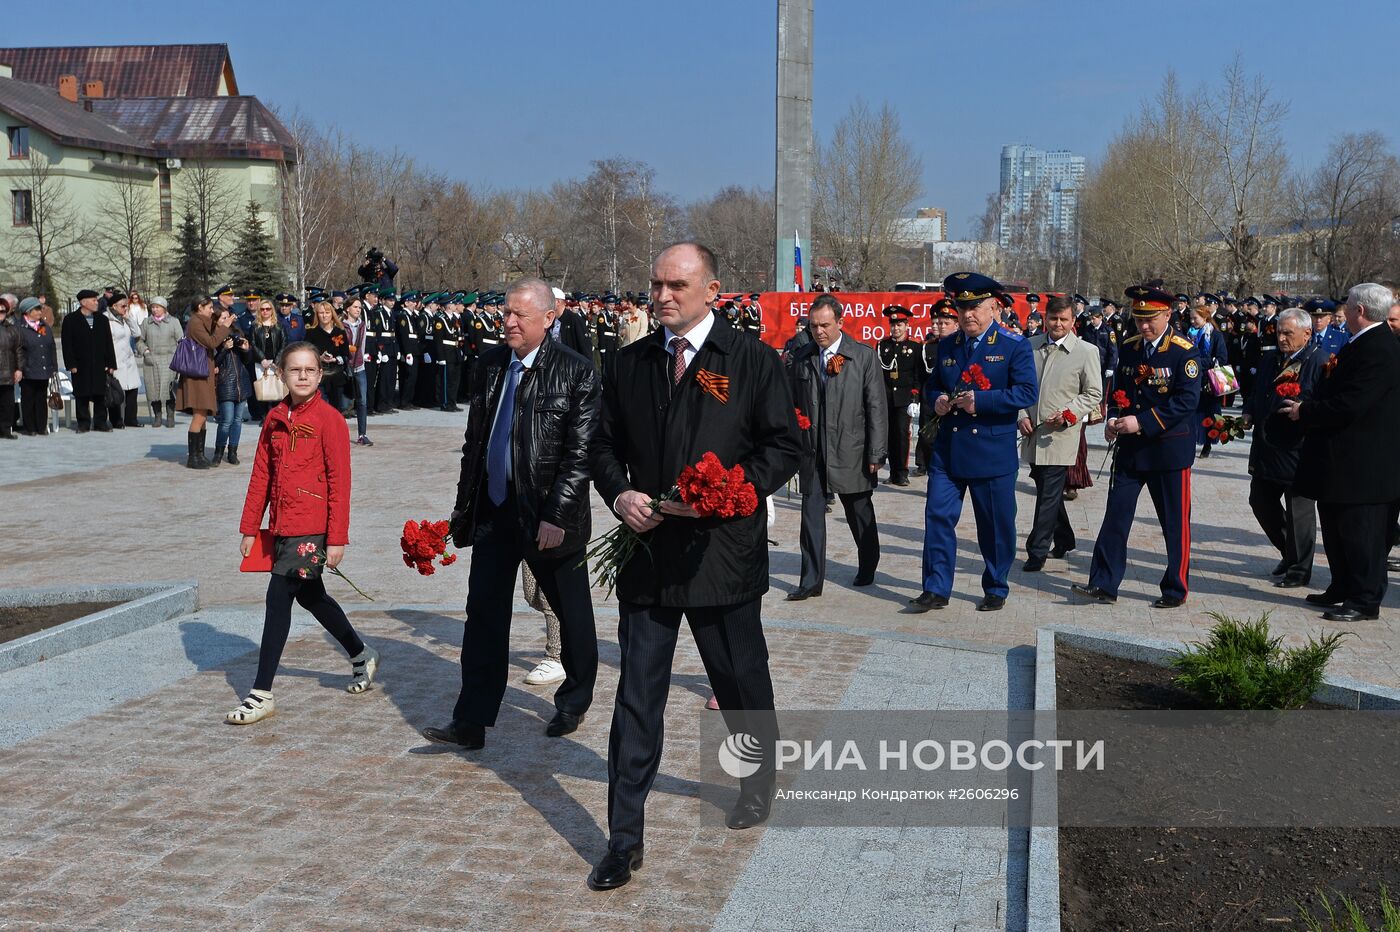 Открытие памятника советскому разведчику Исхаку Ахмерову в Челябинске